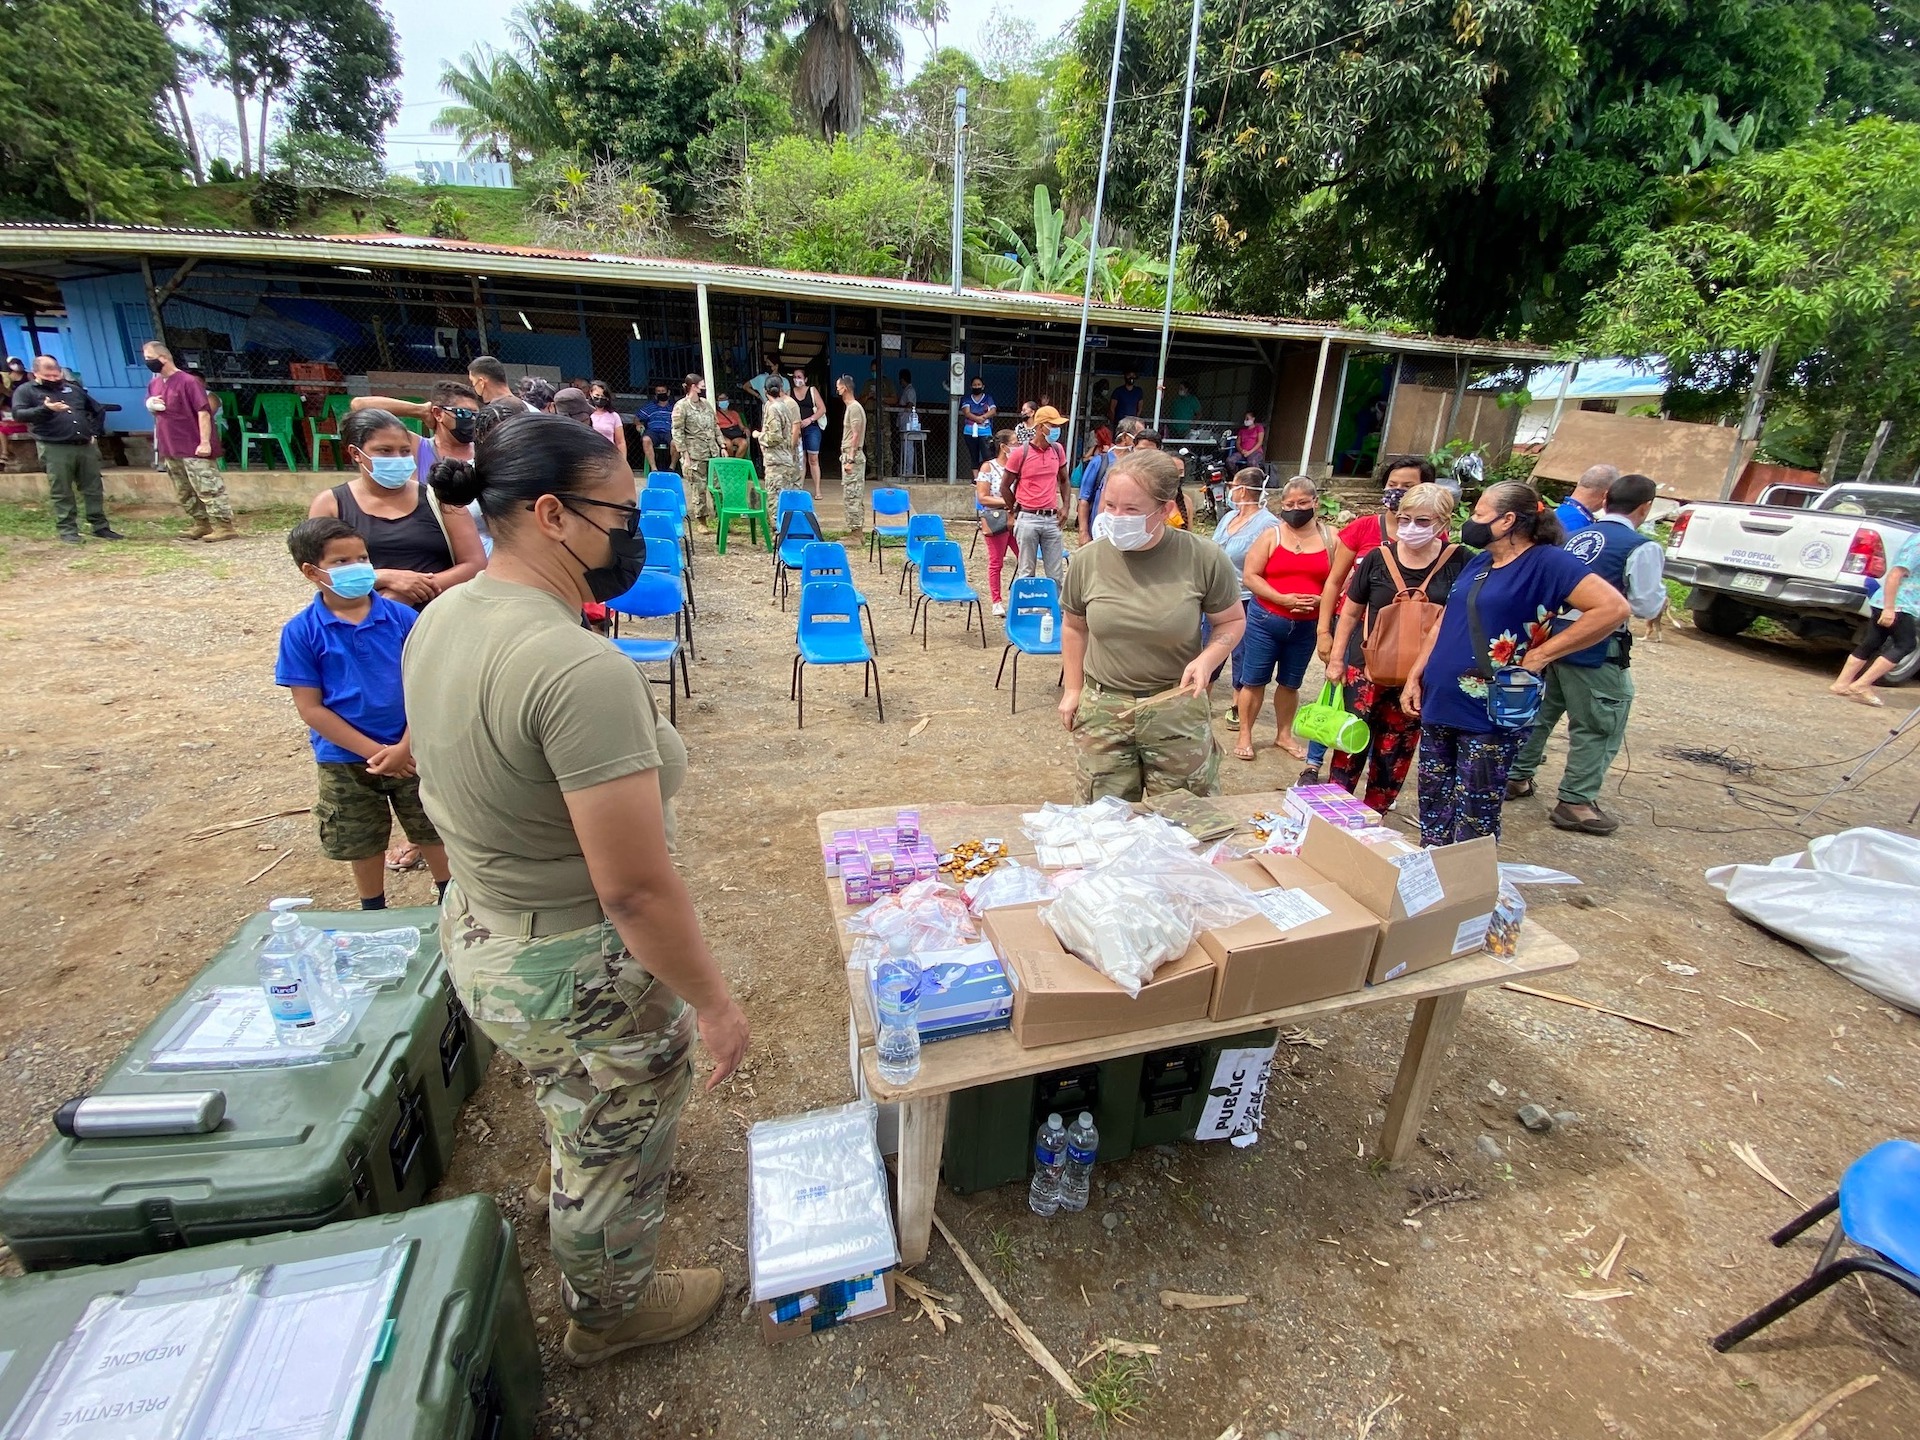 JTF-Bravo deploys medical capabilities in Central America